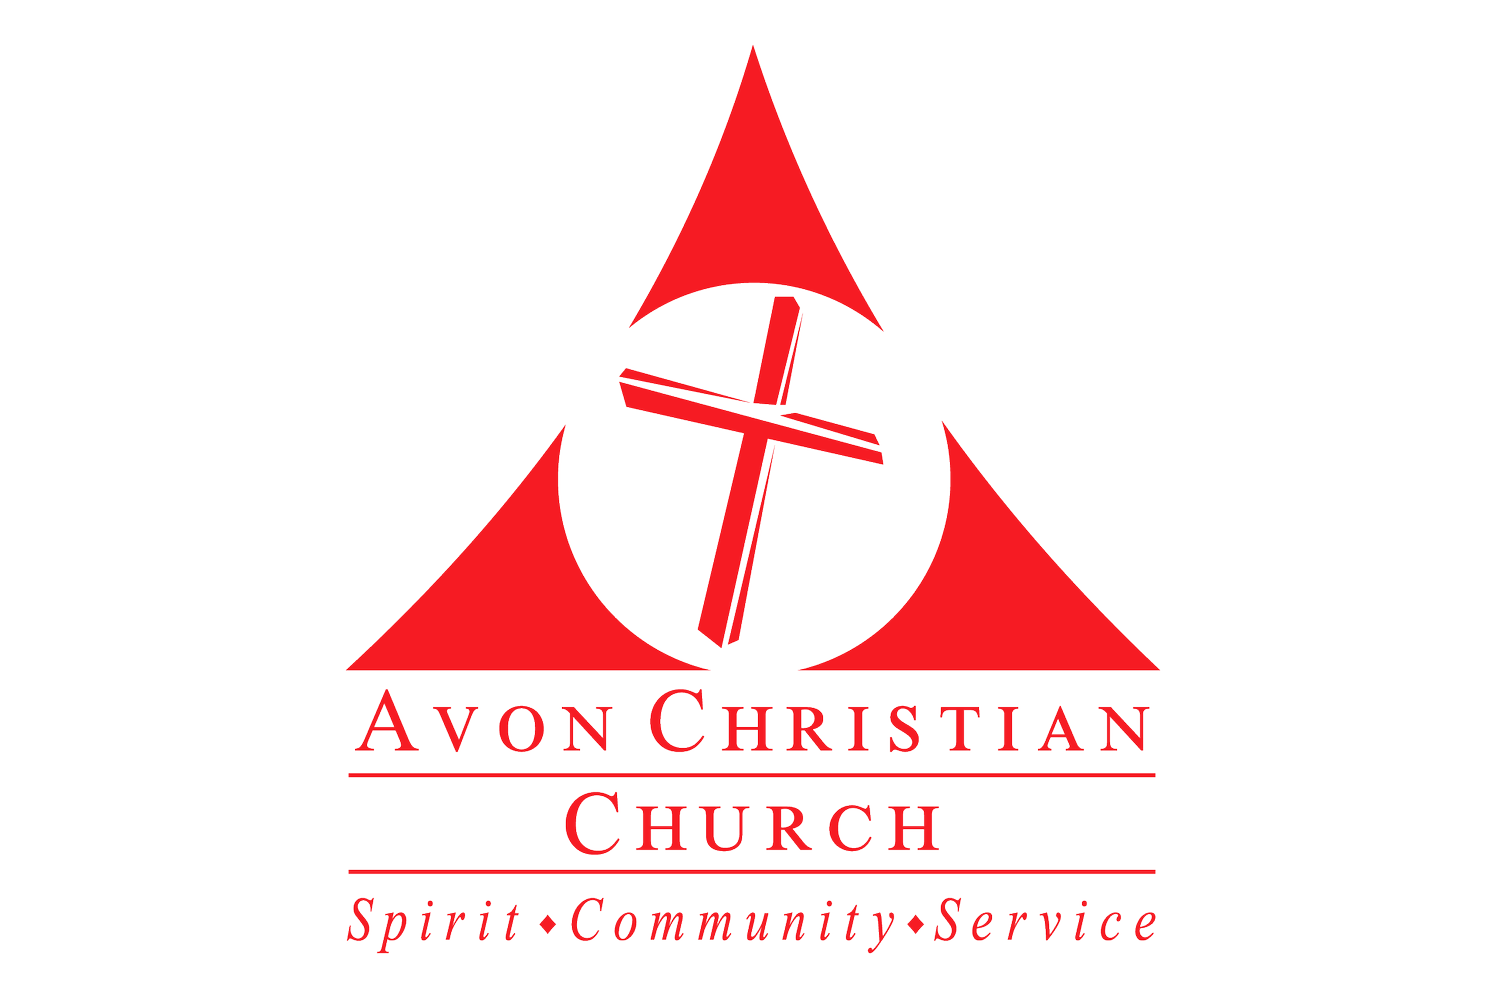 Avon Christian Church